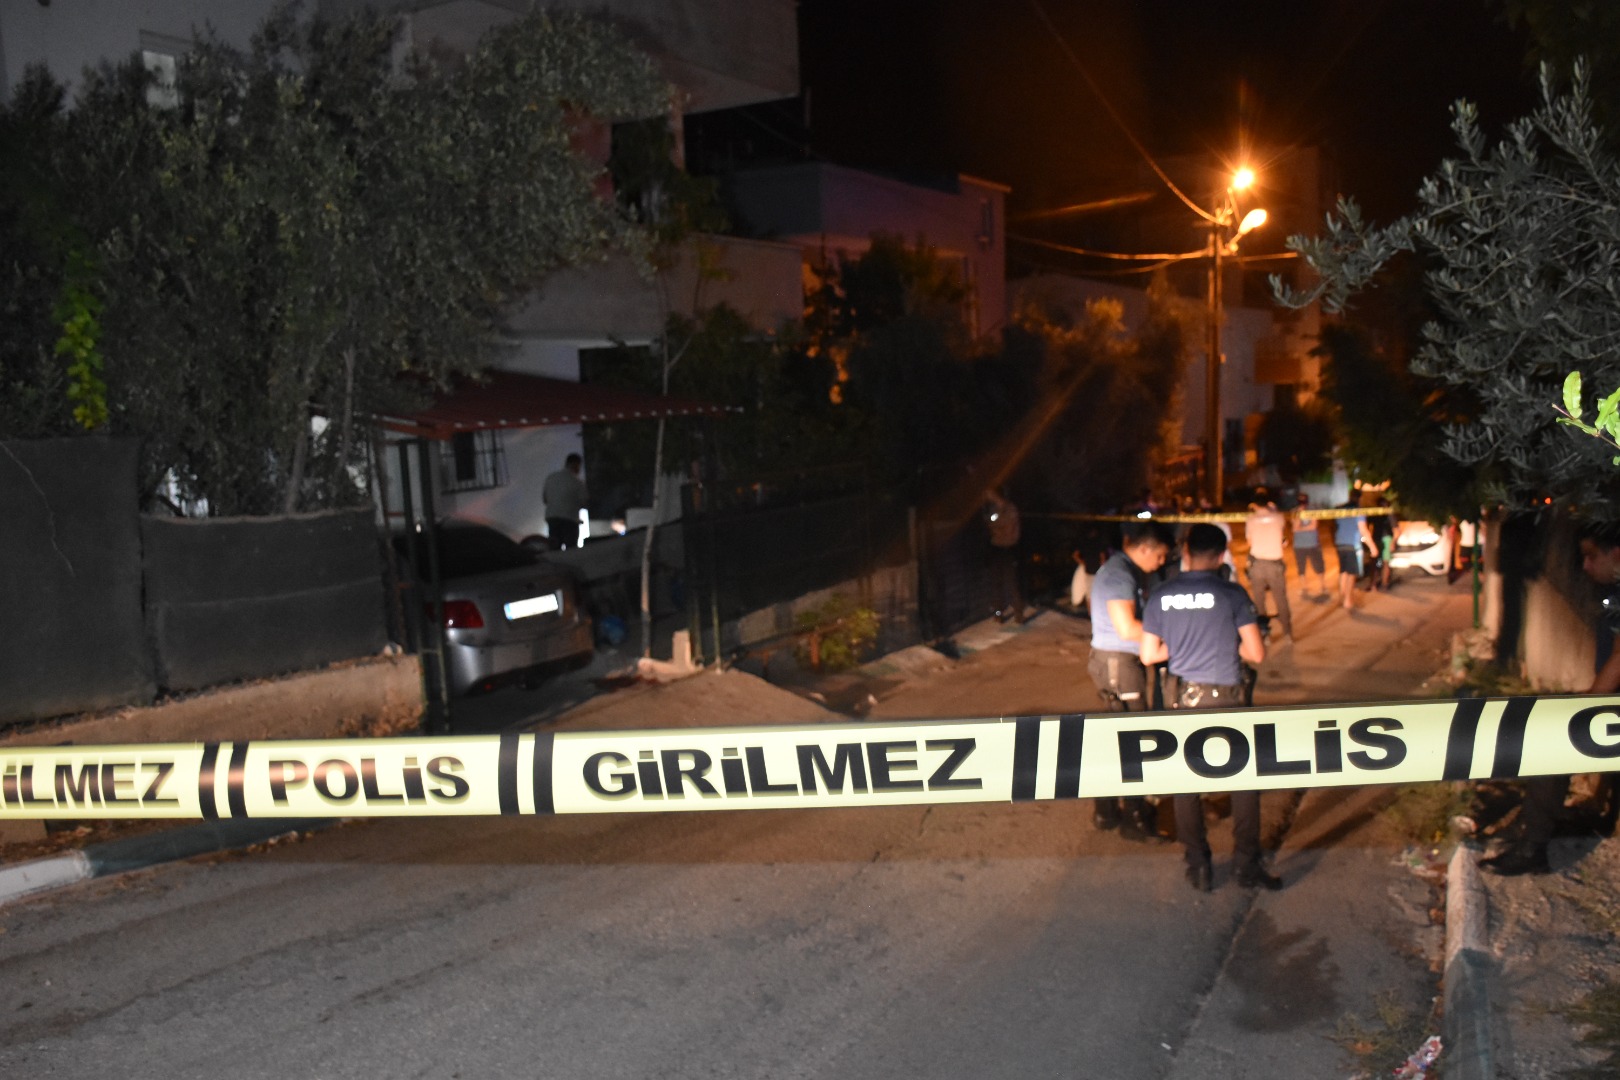 Adana'da kiracı, tartıştığı ev sahibi ile kardeşini vurdu